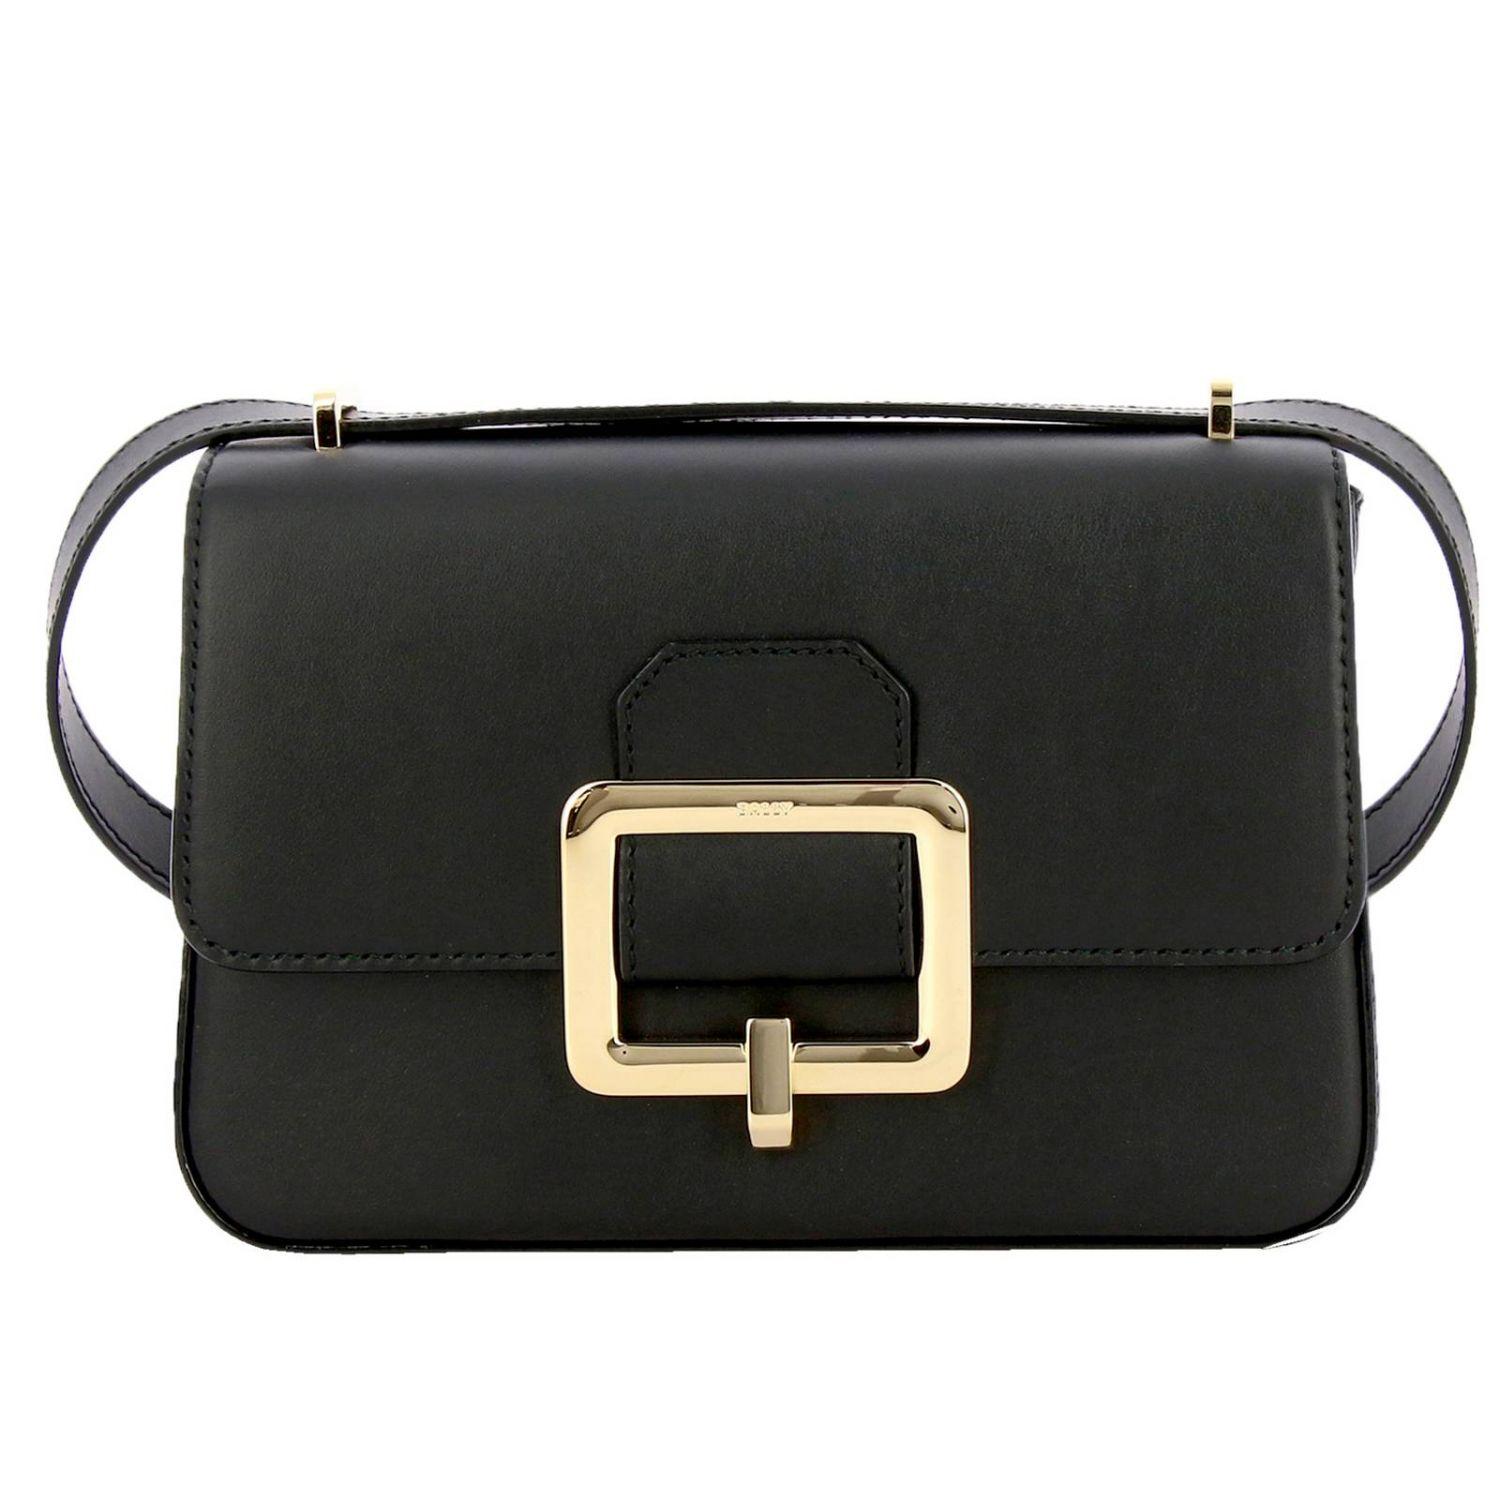 Bally Leather Janelle Shoulder Bag in Black - Save 45% - Lyst